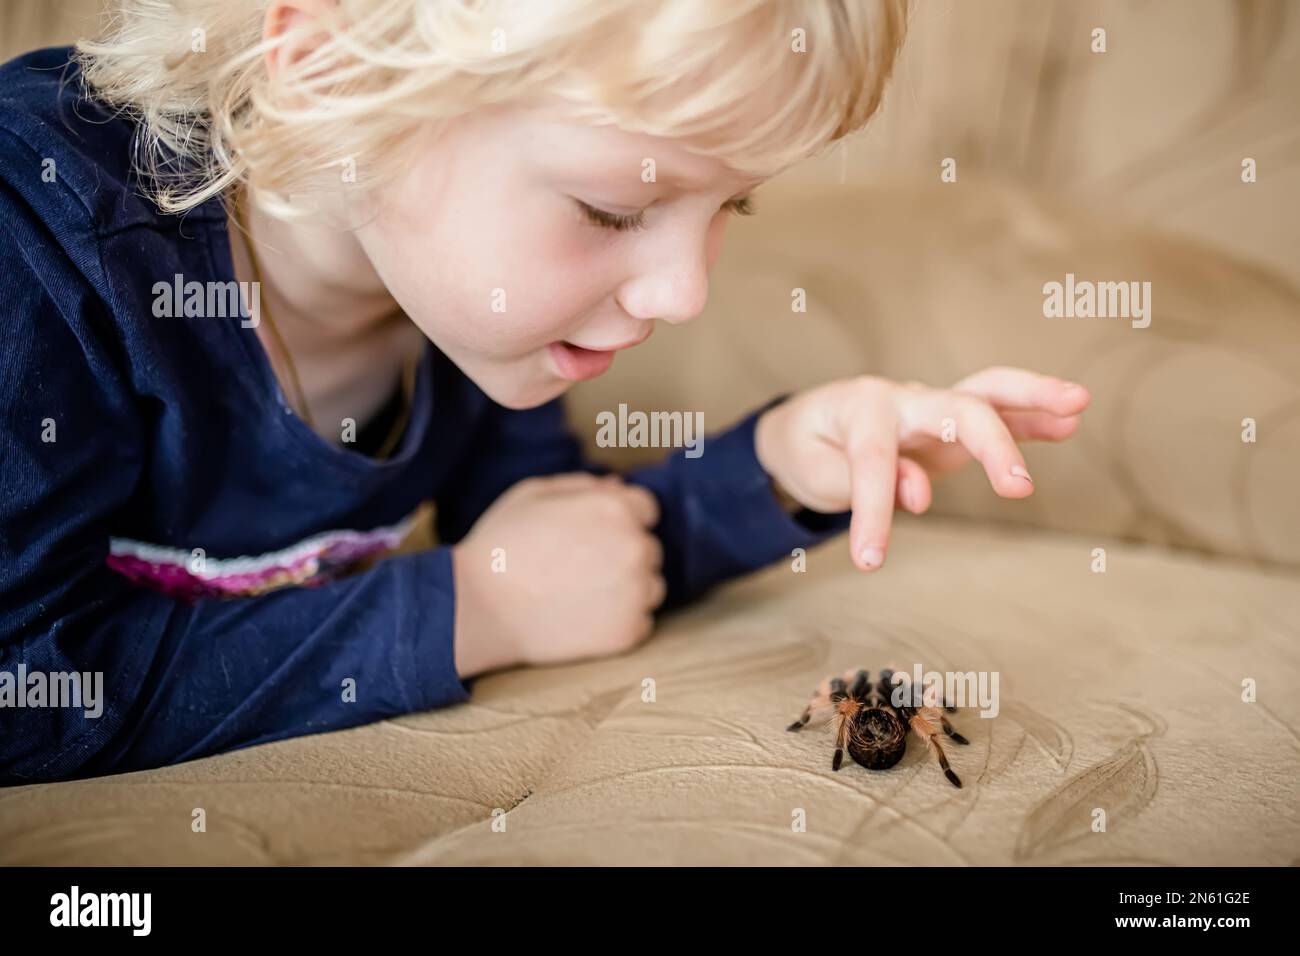 Tarantula araignée à la maison sur le canapé. Une petite fille sans peur joue avec une terrible araignée rampant sur le lit. Banque D'Images